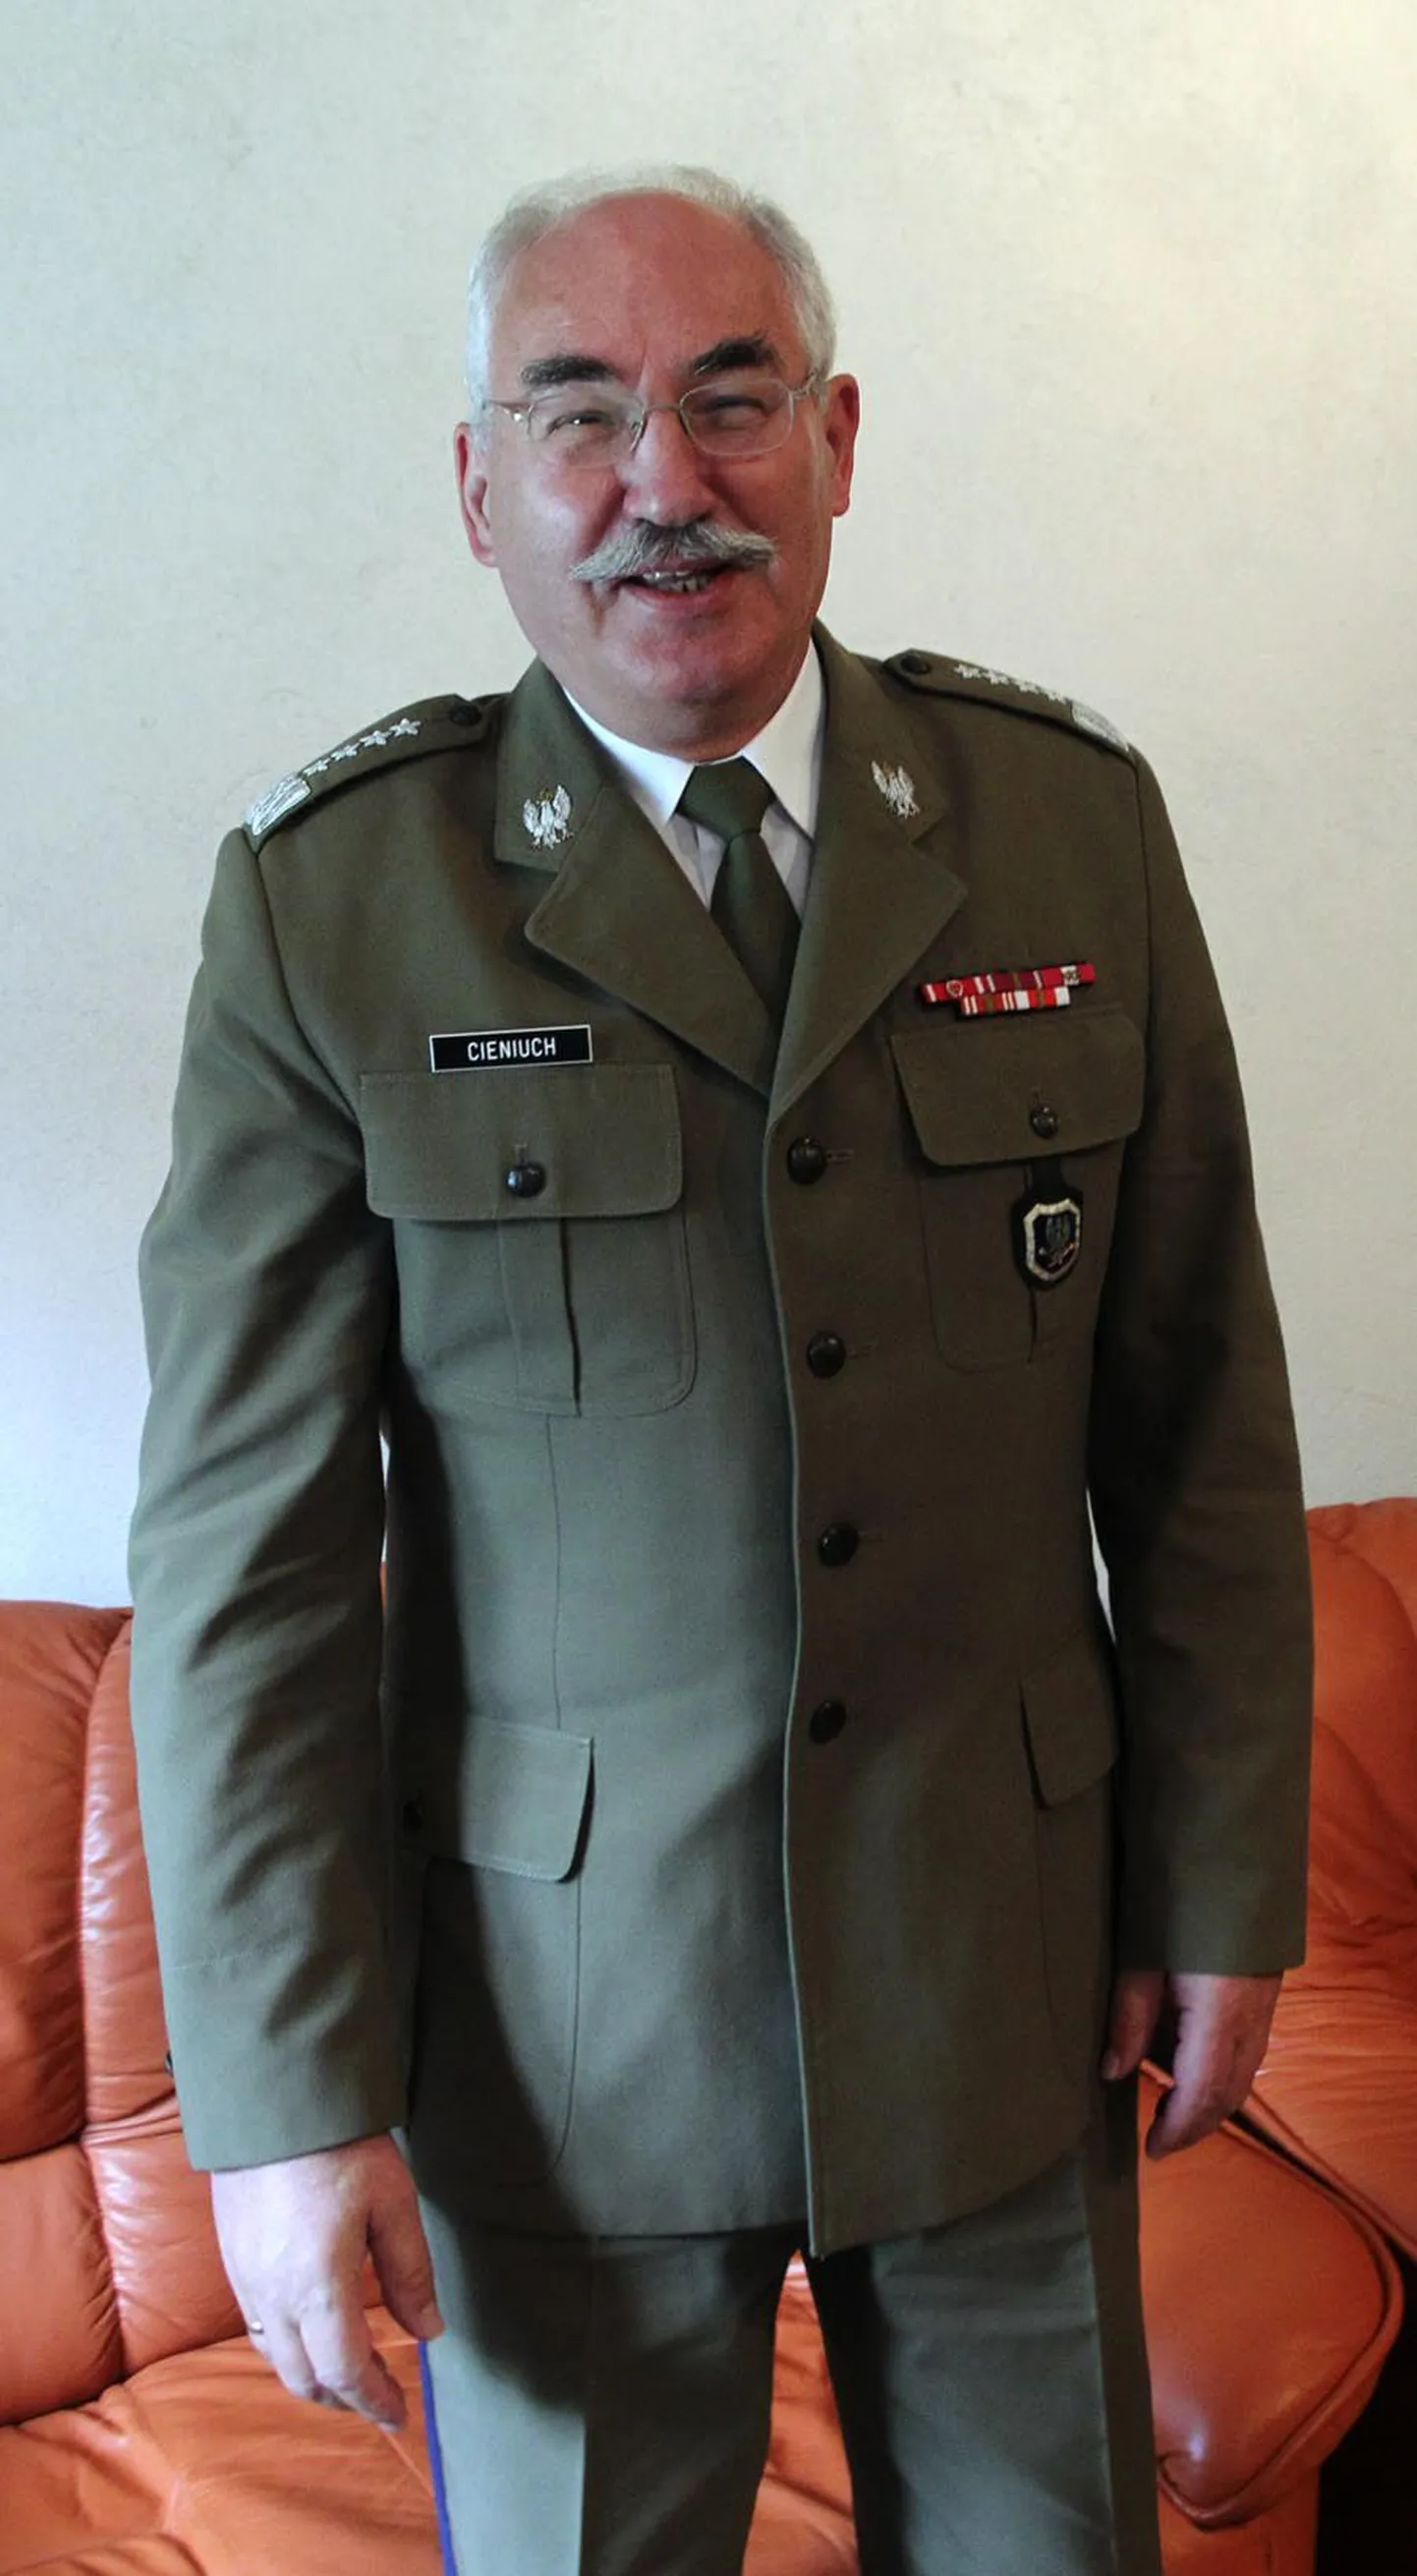 Kindral Mieczysław Cieniuch külastas Tallinna möödunud nädalal.